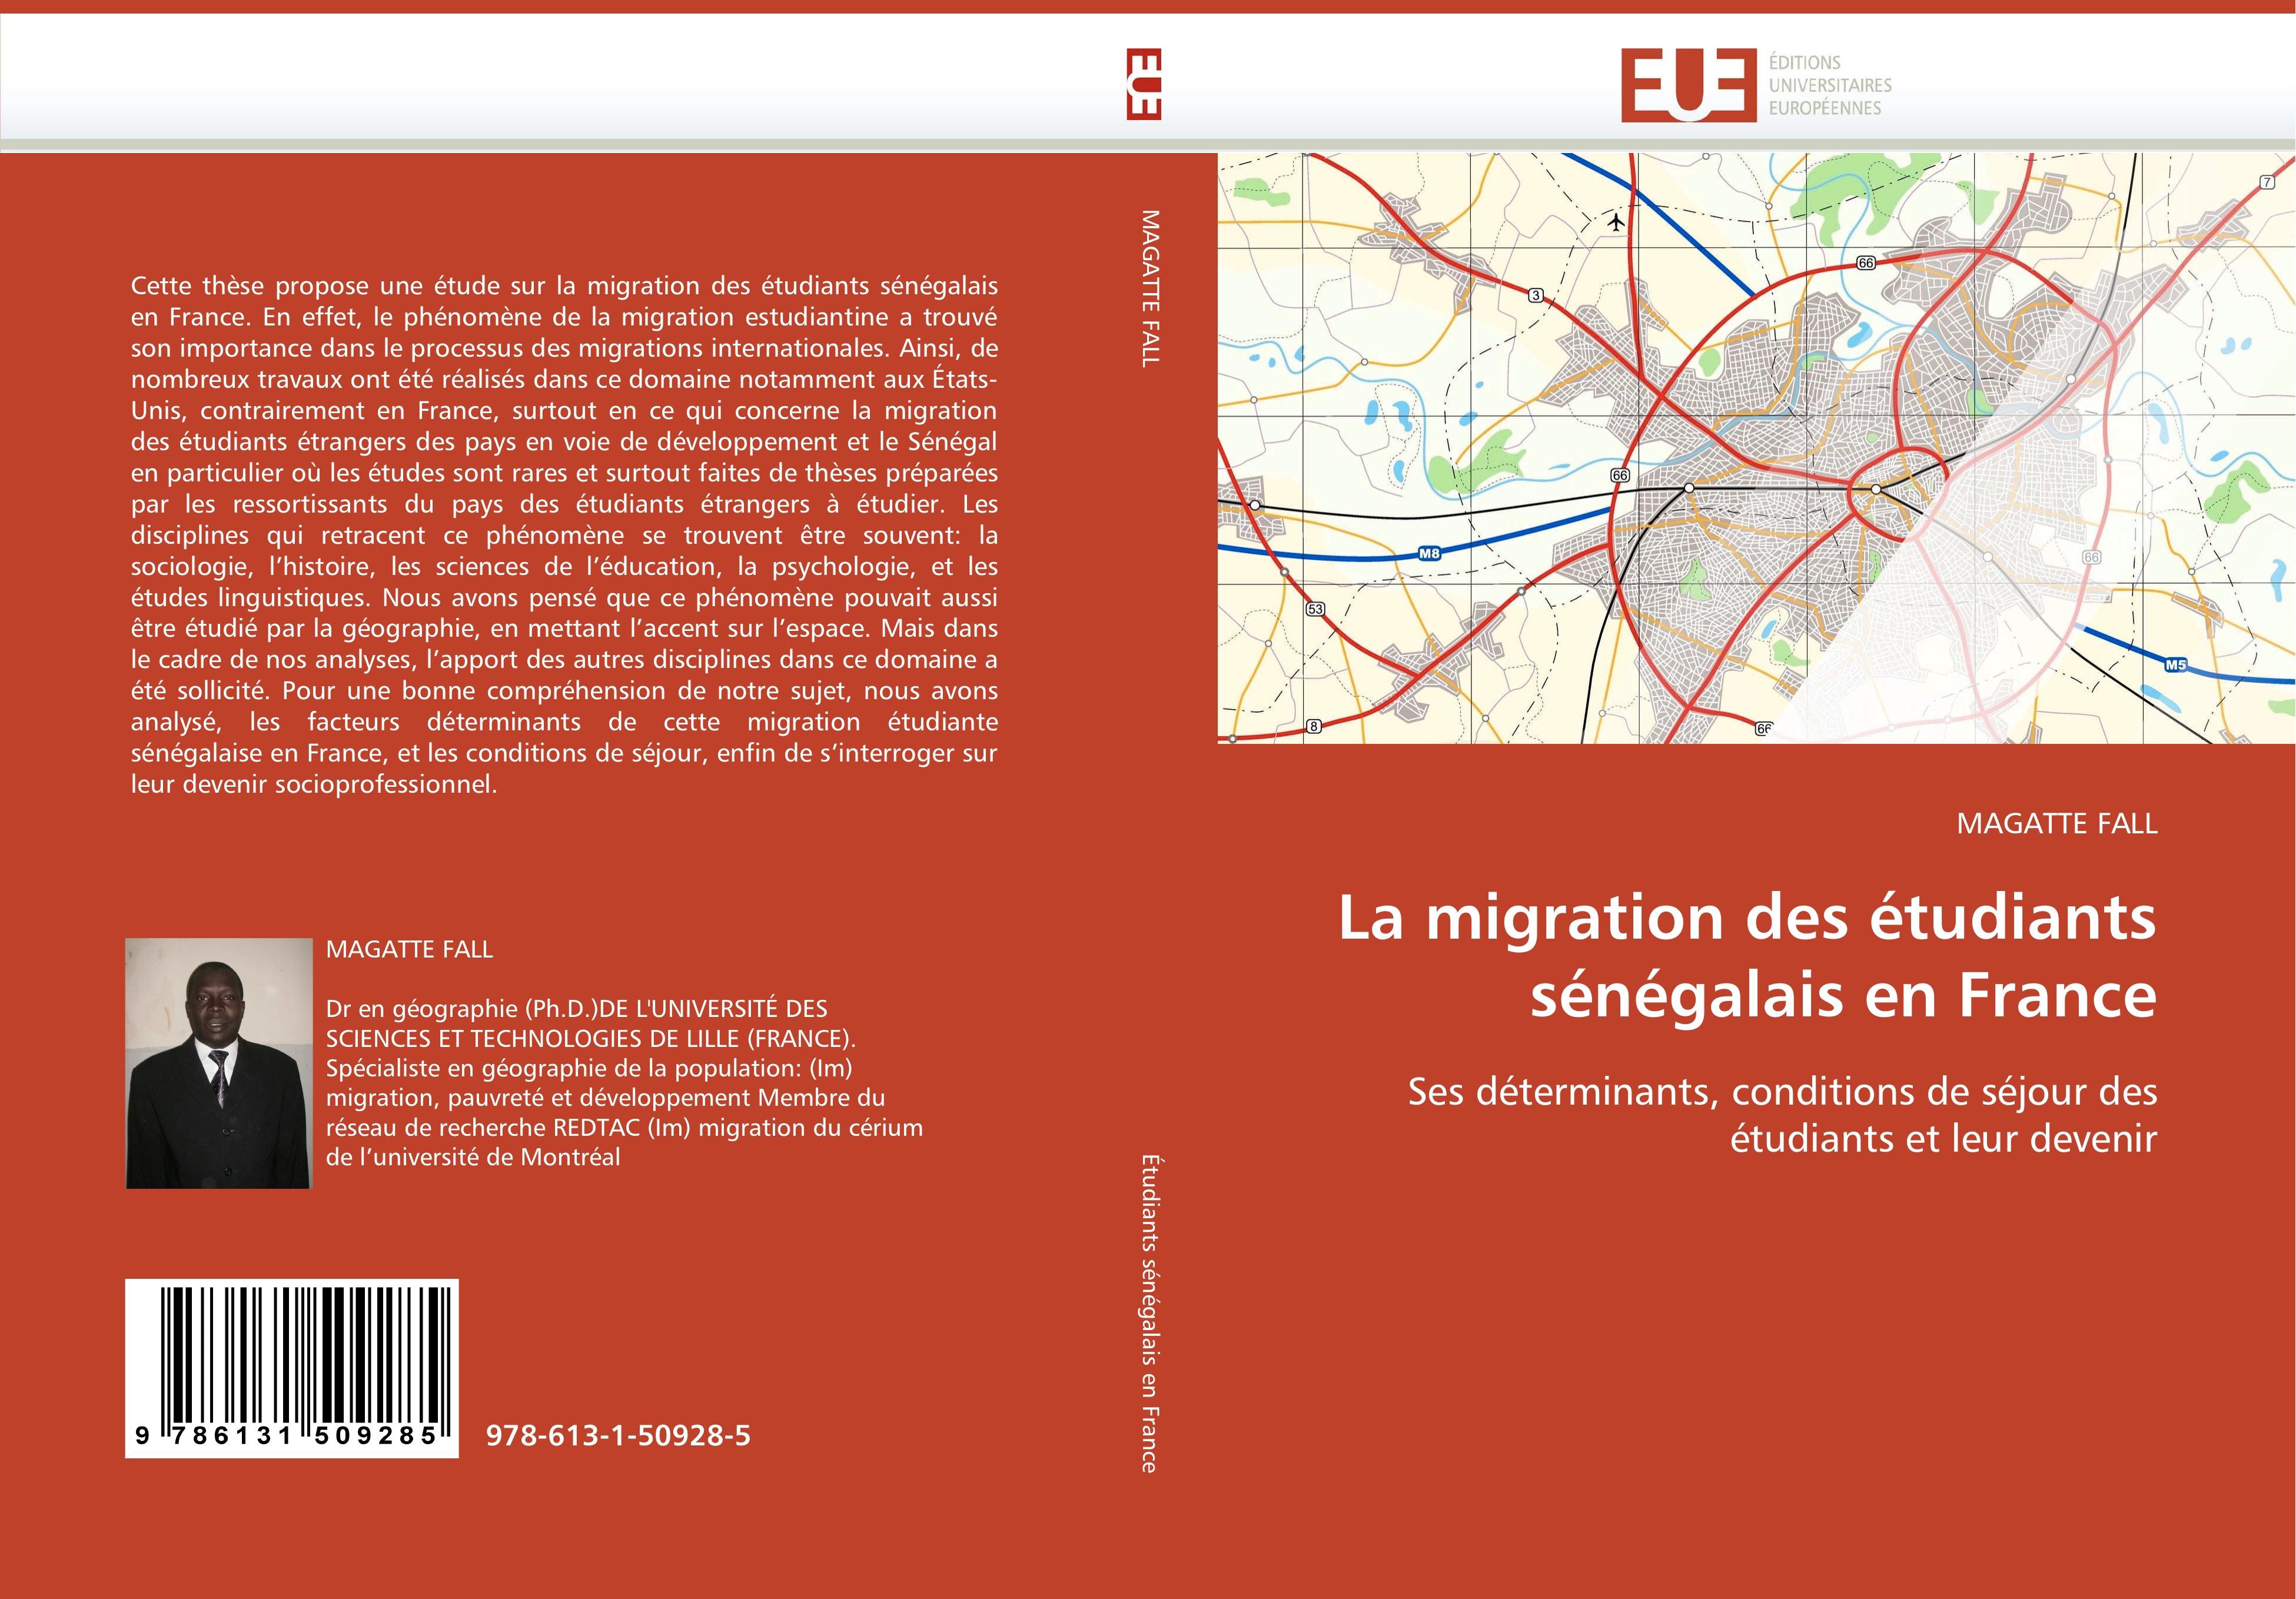 La migration des étudiants sénégalais en France - MAGATTE FALL